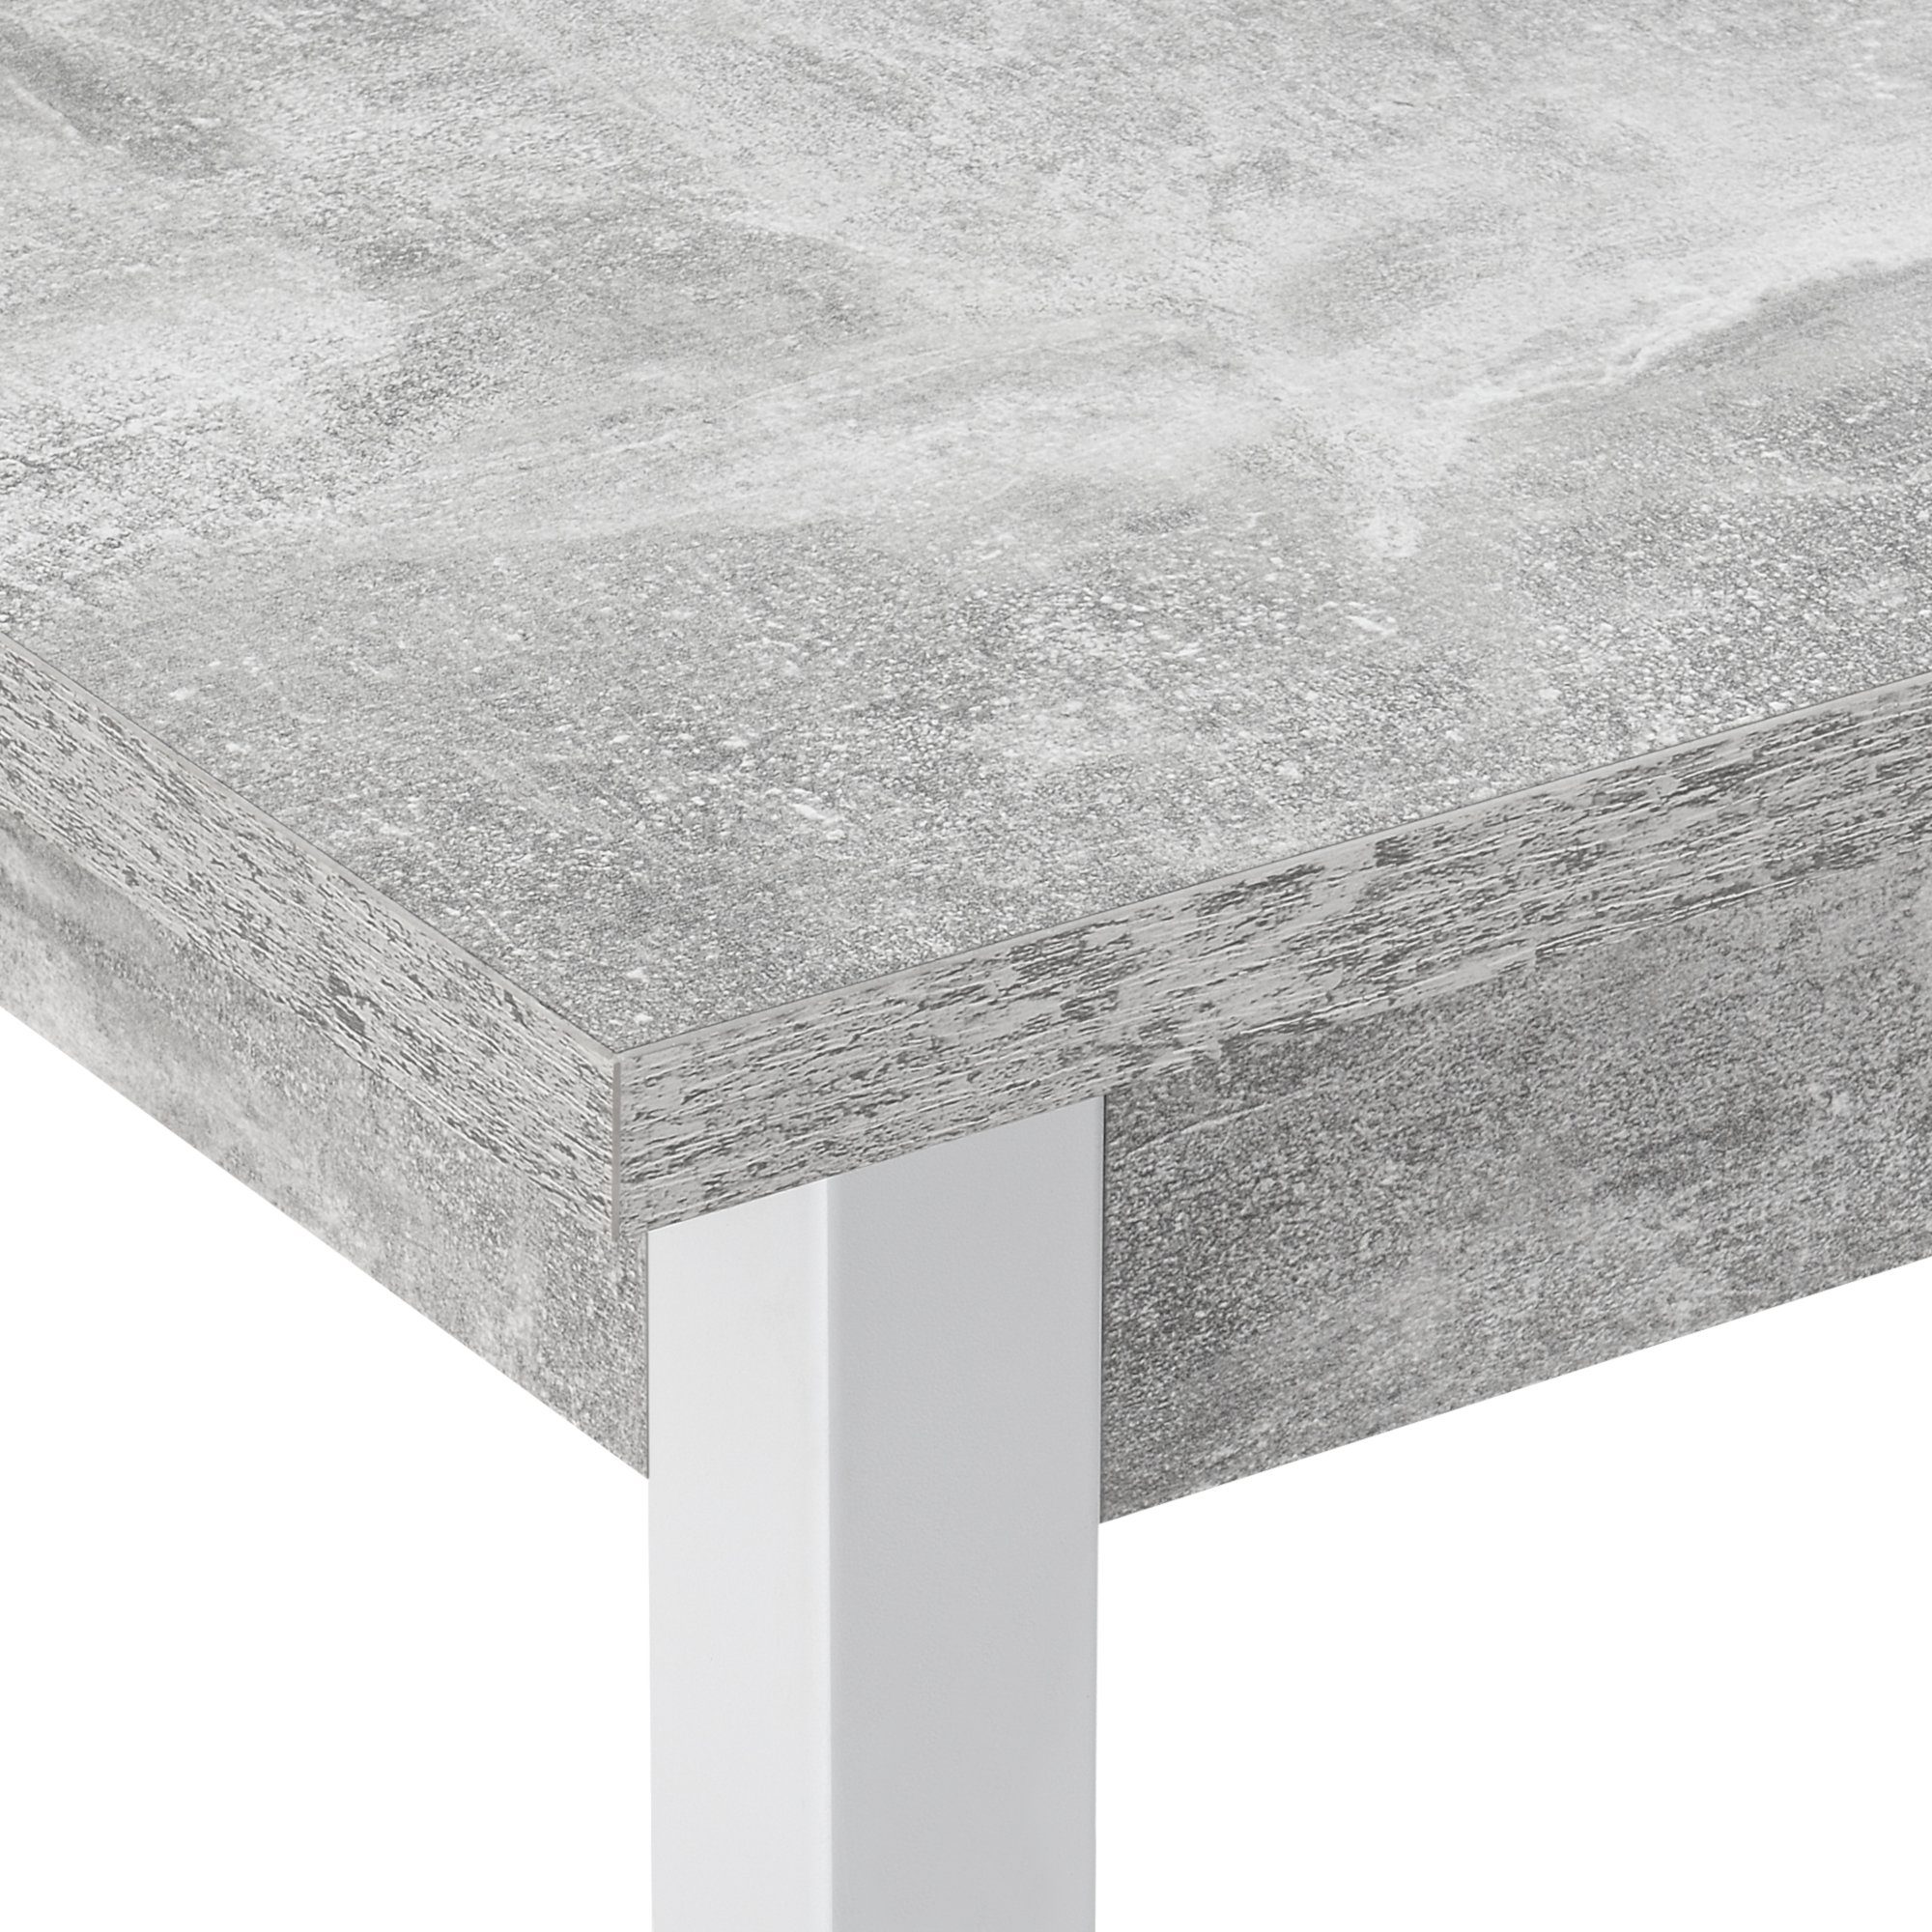 en.casa Esstisch, »Den Haag« weiß - betonfarben | 120x60cm Esszimmertisch | Betonoptik Weiß betonfarben / Küchentisch weiß